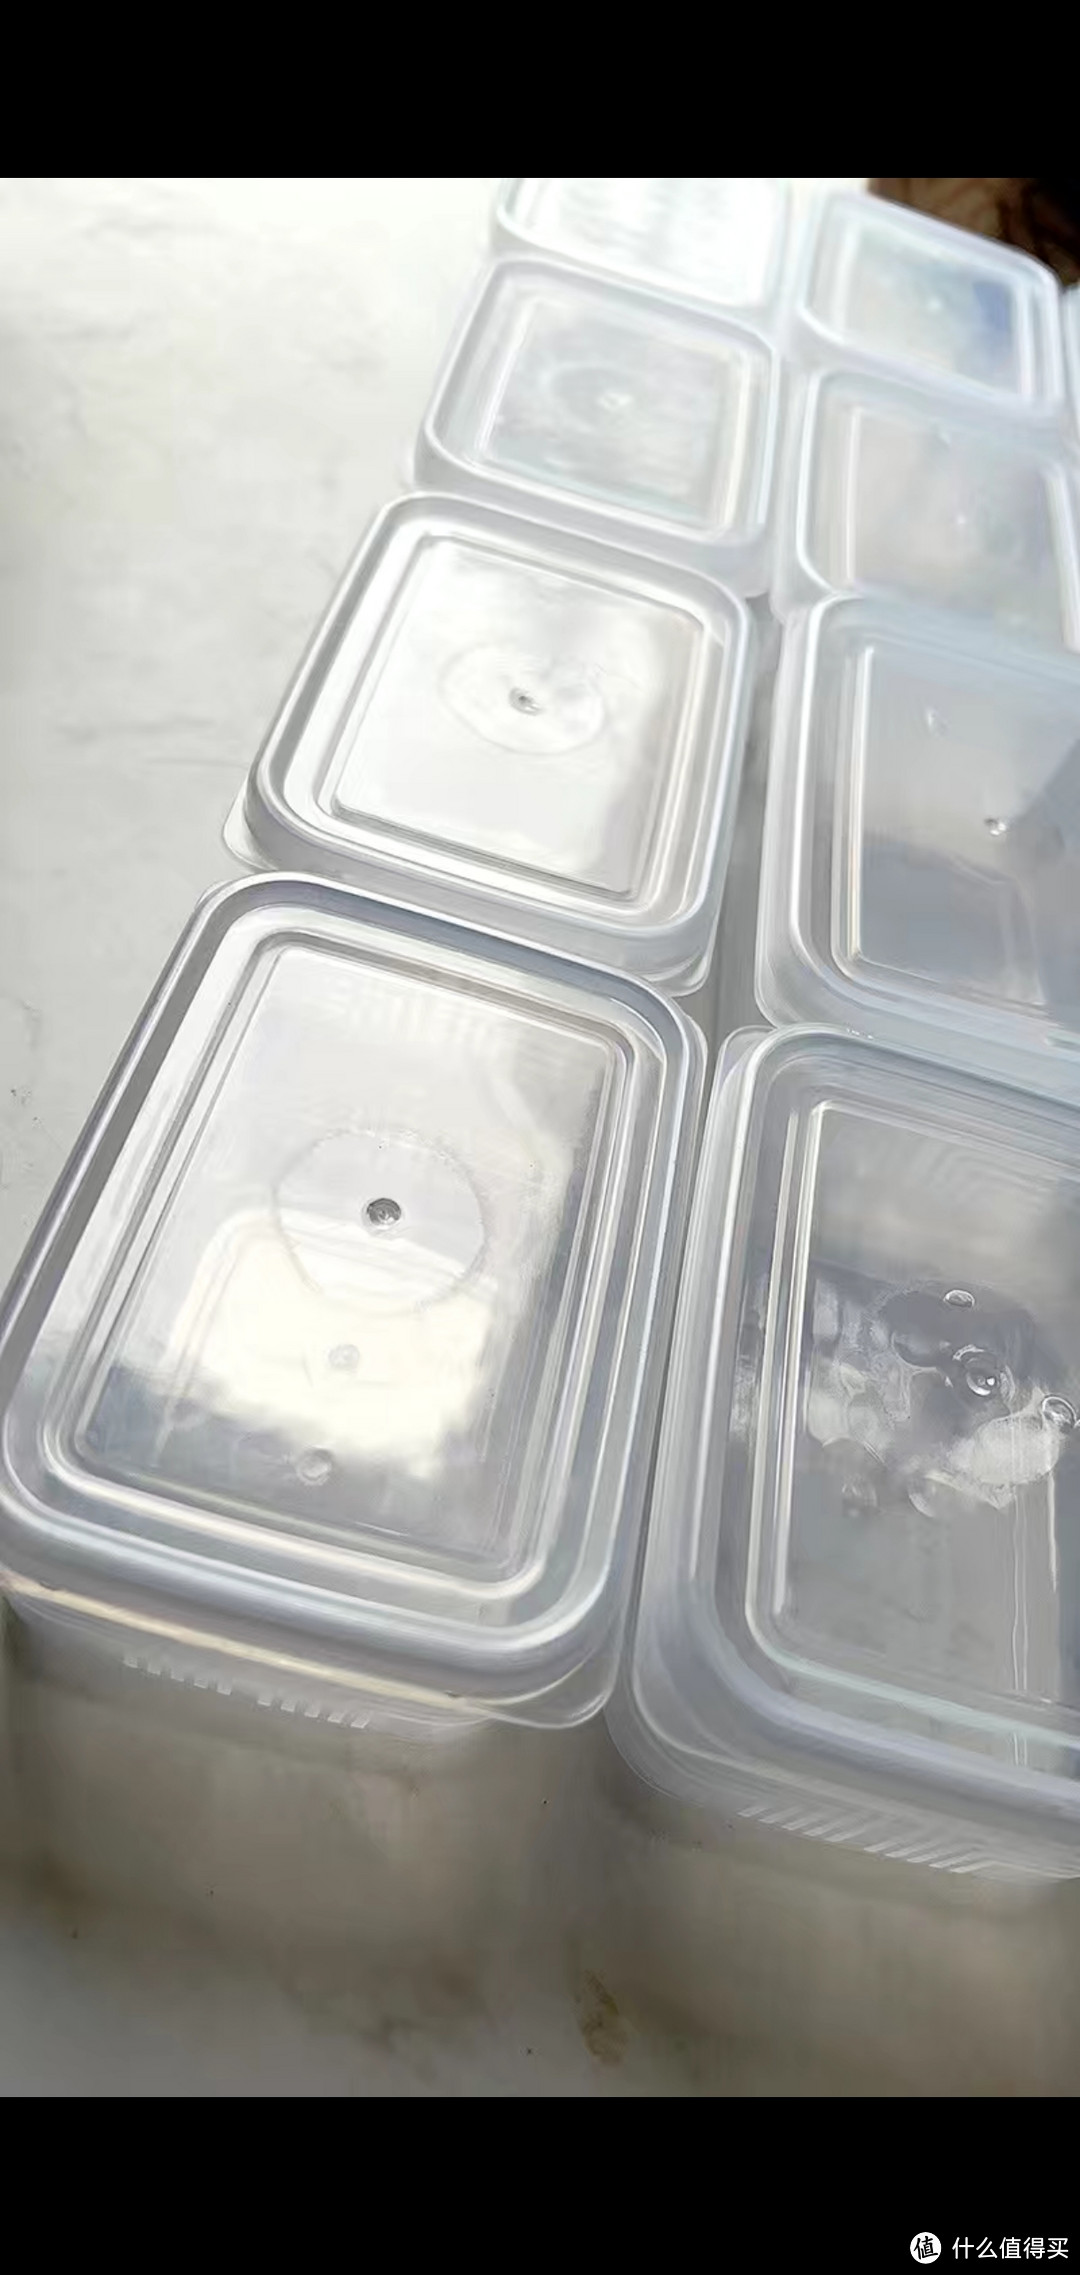 小巧方便的透明塑料食物保鲜盒。